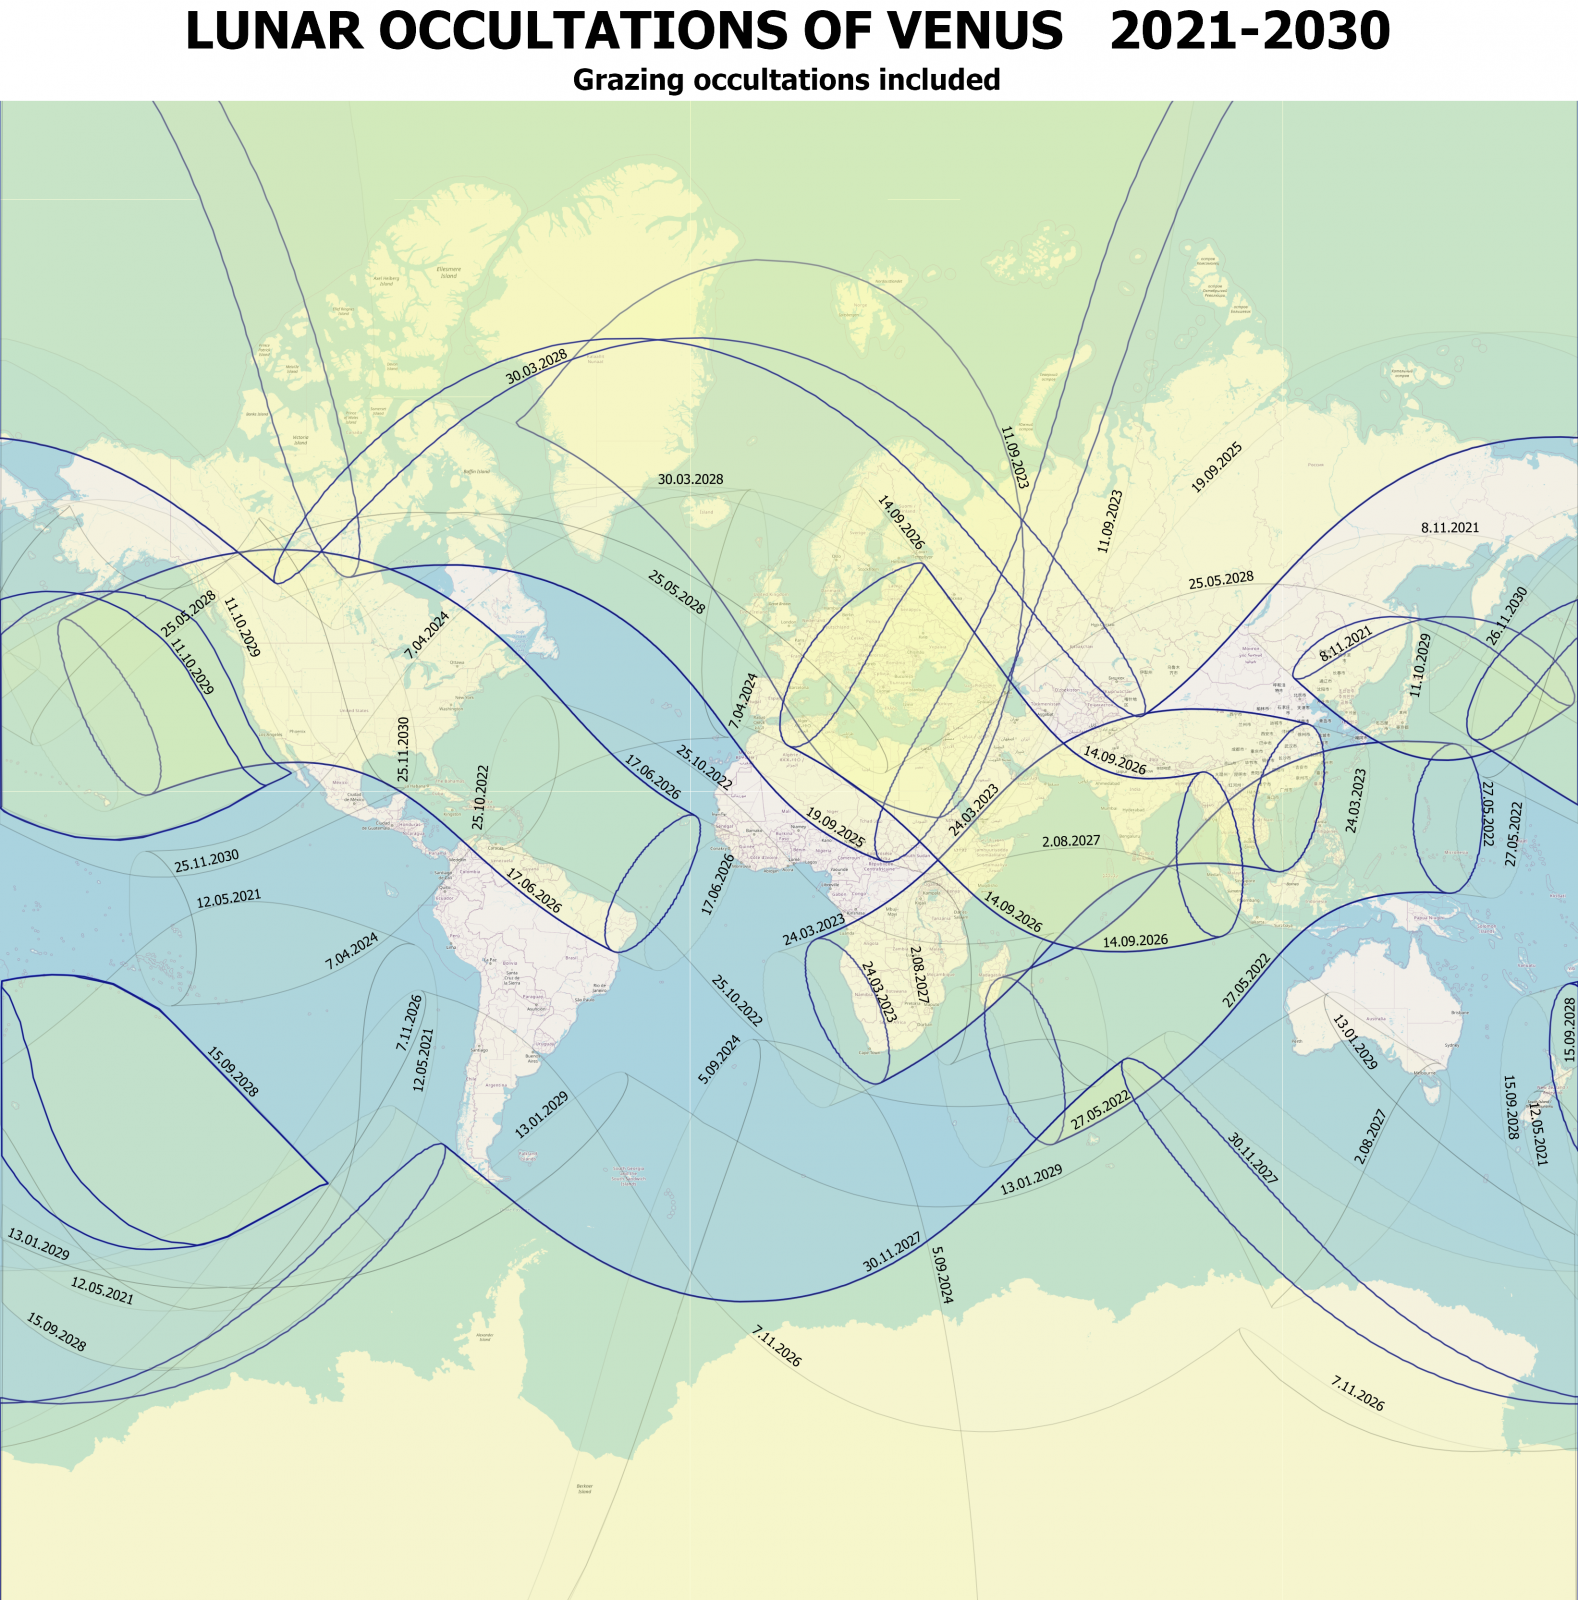 Venus-2021-2030.png